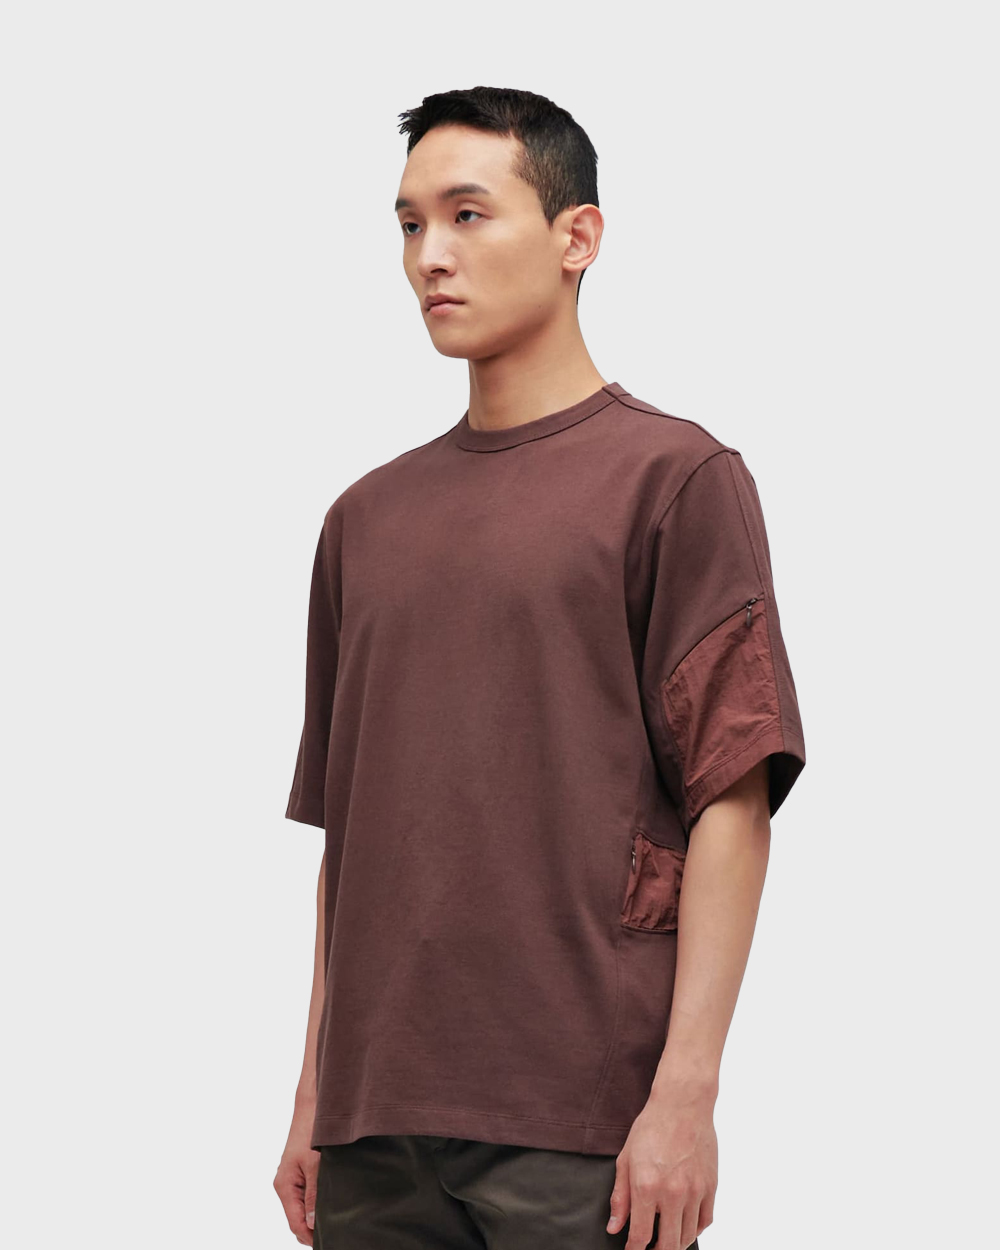 ÉÉ (Étiquette-vidÉ) Pocket t-shirts (Brown)